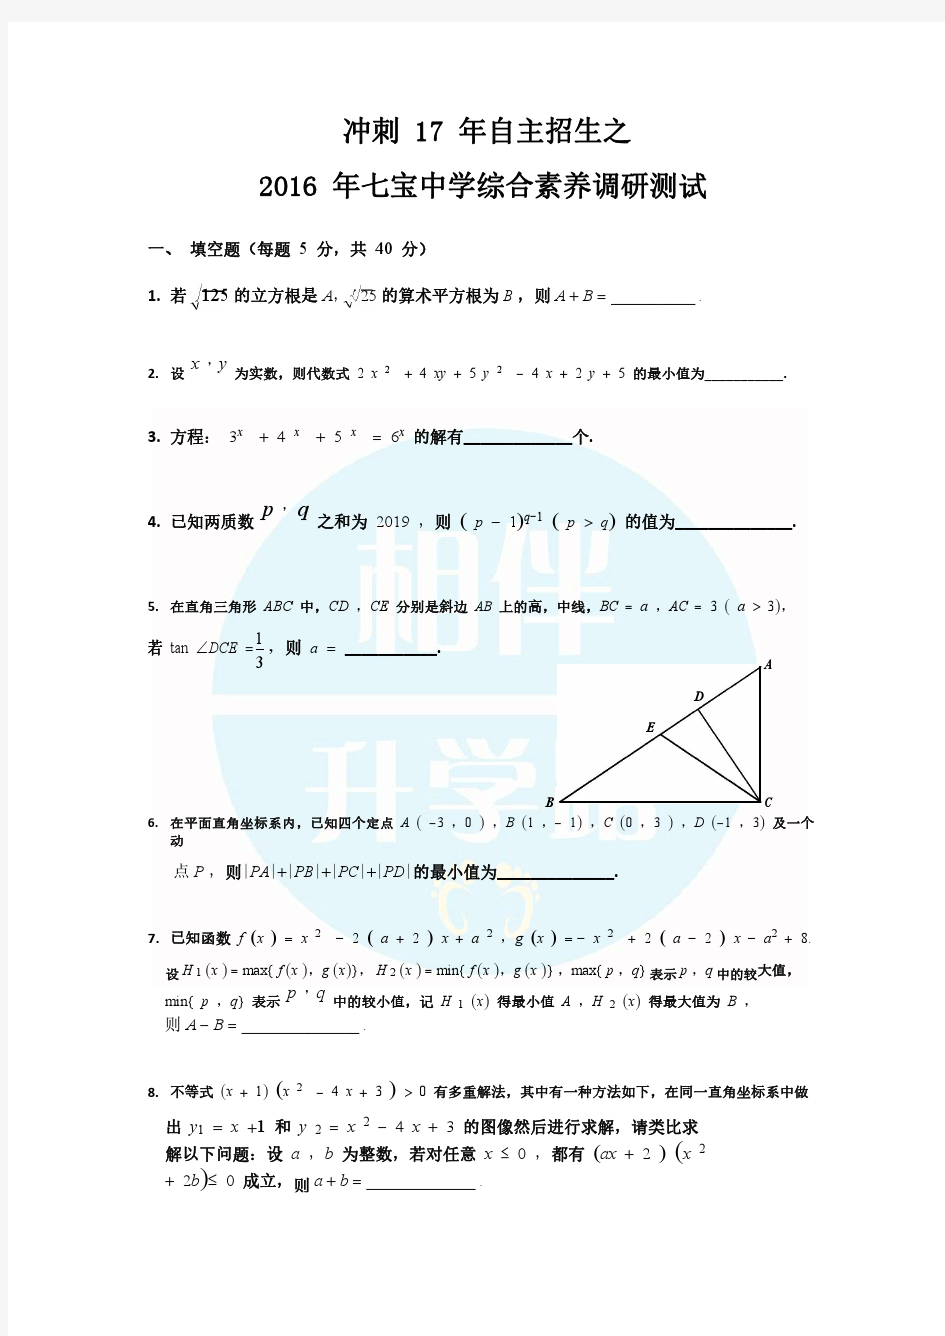 七宝中学自招综合素养测试数学题(附答案)